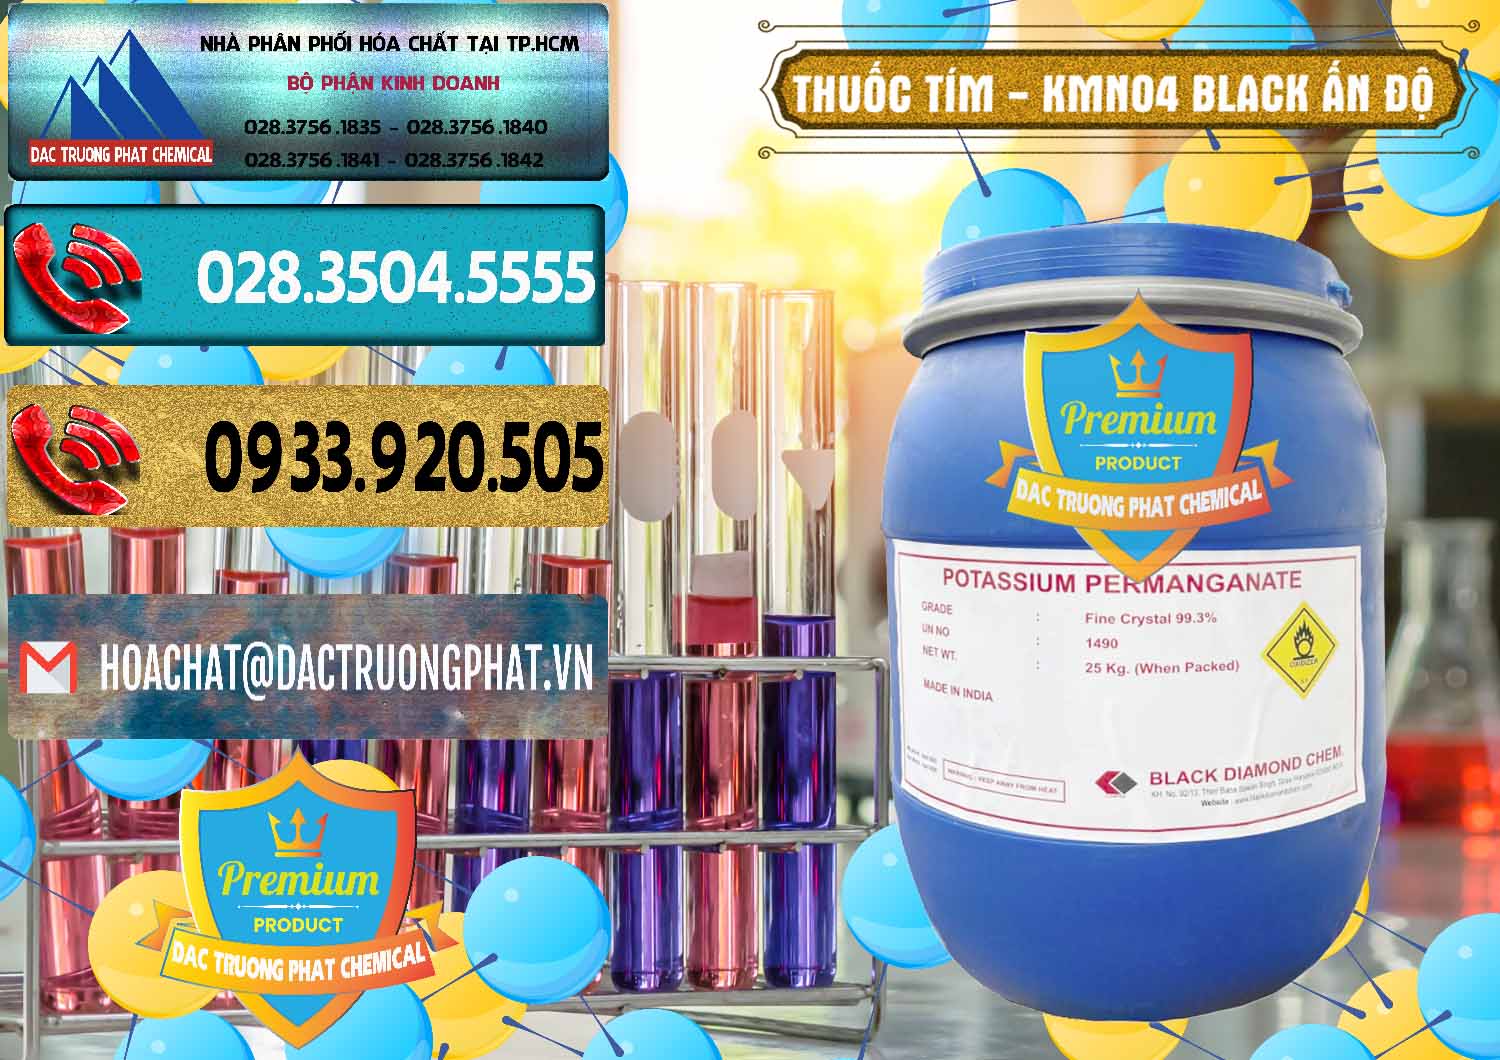 Chuyên kinh doanh _ bán Thuốc Tím - KMNO4 Black Diamond Ấn Độ India - 0414 - Công ty chuyên cung cấp _ nhập khẩu hóa chất tại TP.HCM - hoachatdetnhuom.com